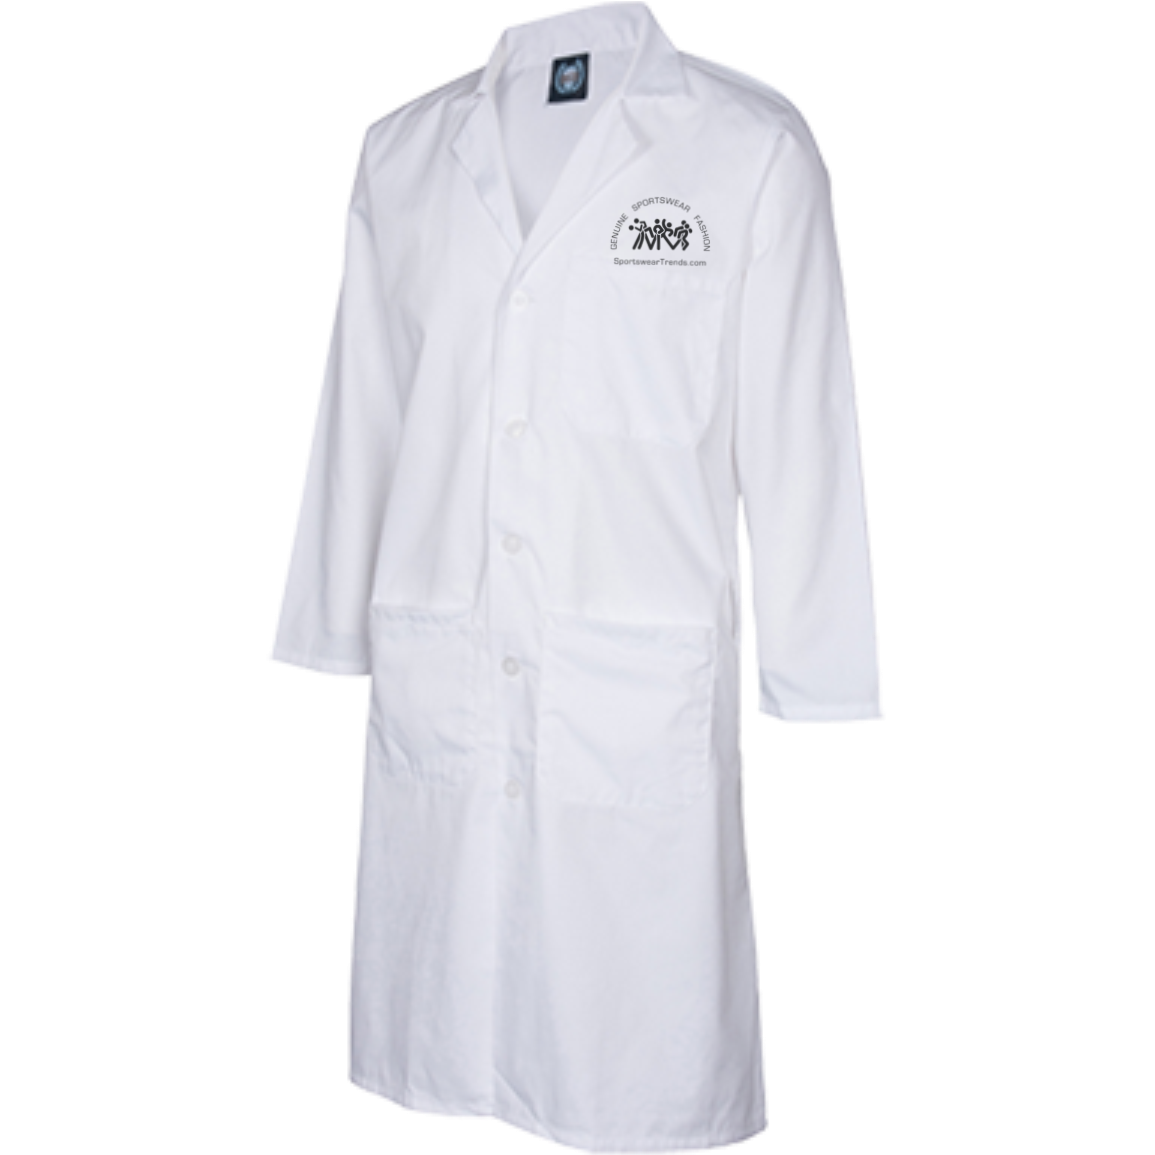 pocket clipart lab coat